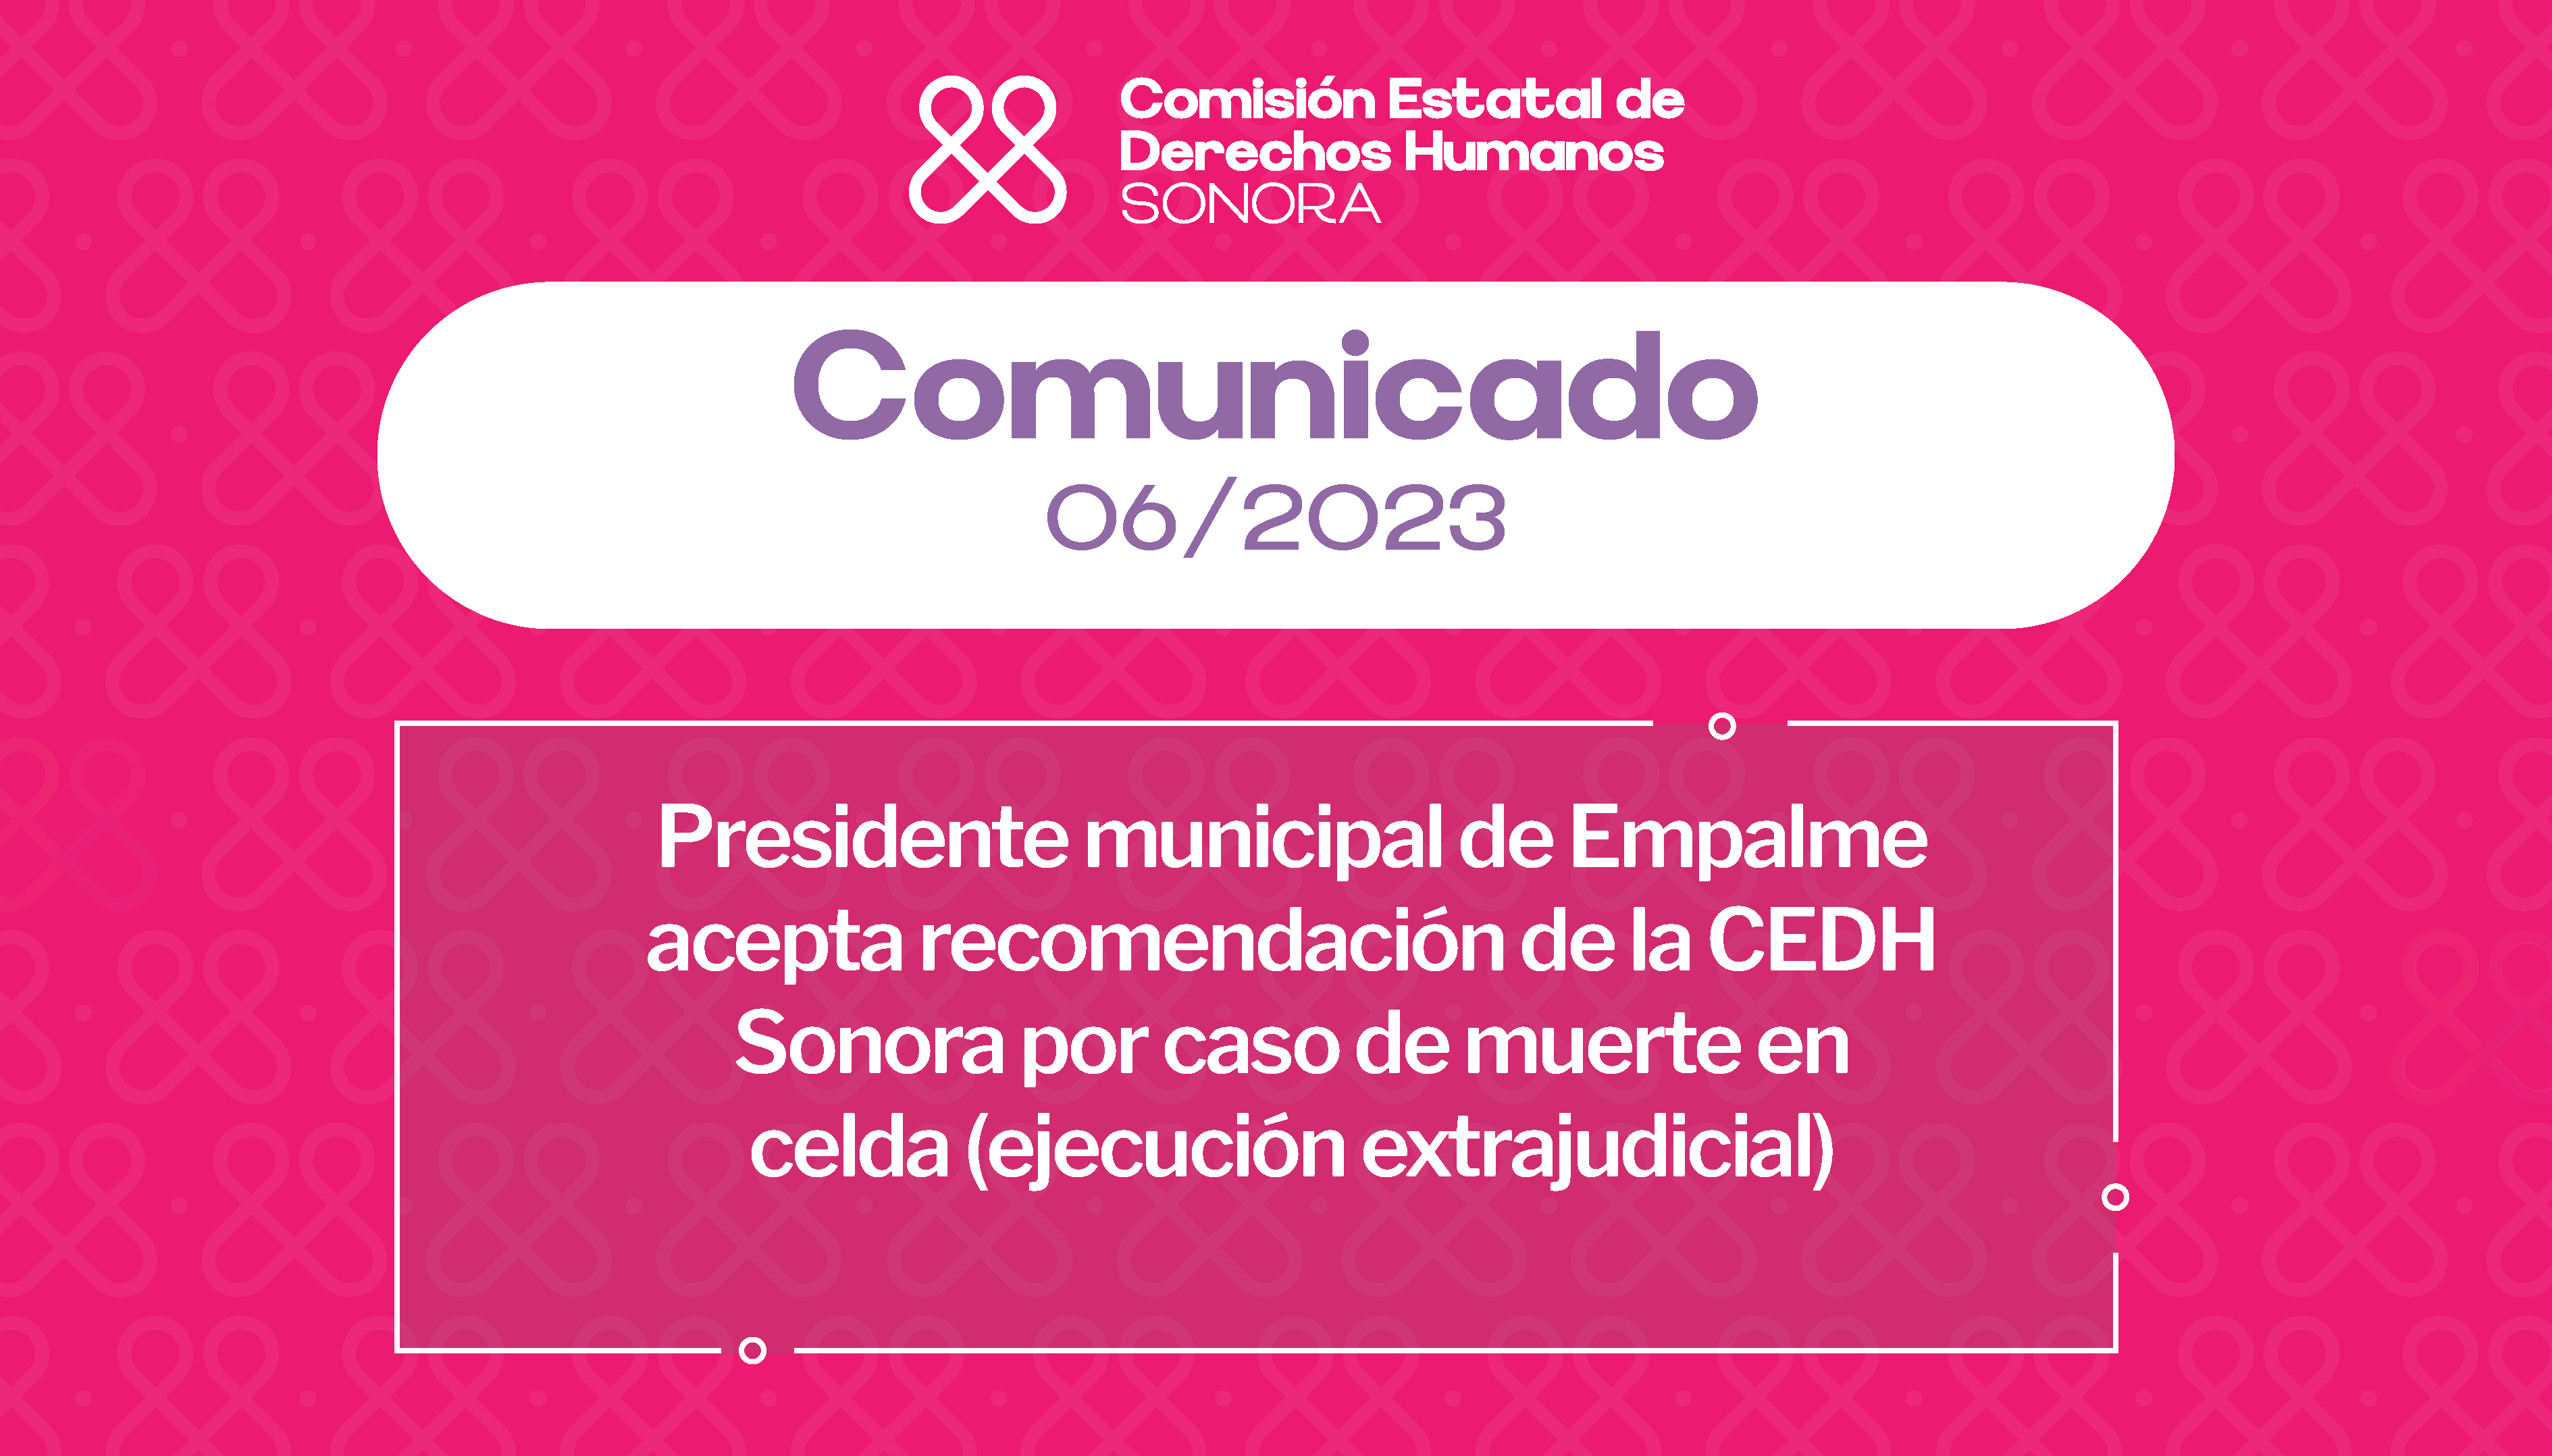 Presidente municipal de Empalme acepta recomendación de la CEDH Sonora  por caso de muerte en celda (ejecución extrajudicial)